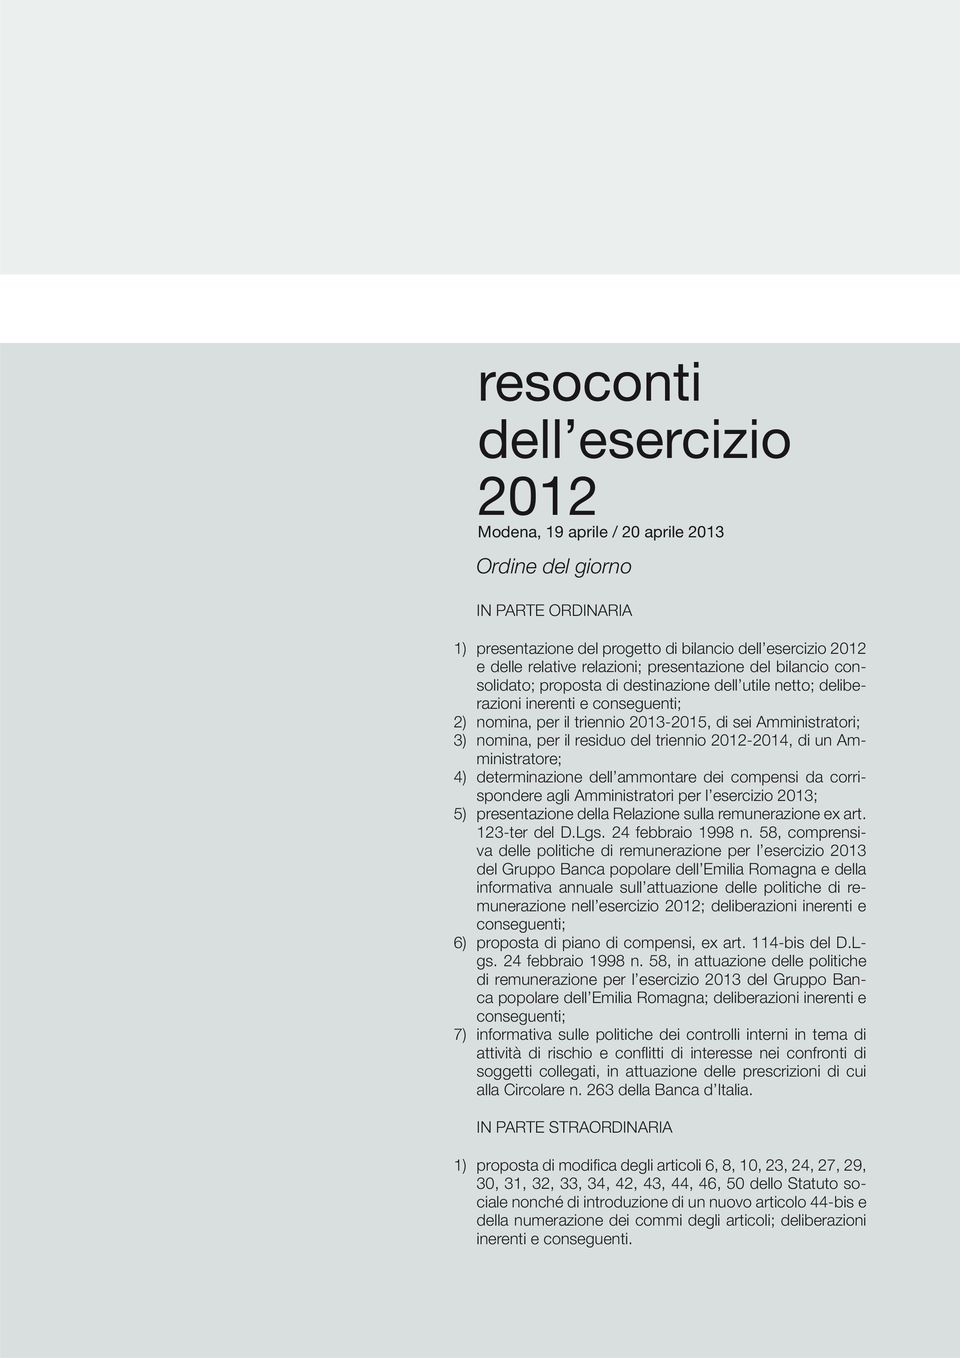 residuo del triennio 20122014, di un Amministratore; 4) determinazione dell ammontare dei compensi da corrispondere agli Amministratori per l esercizio 2013; 5) presentazione della Relazione sulla